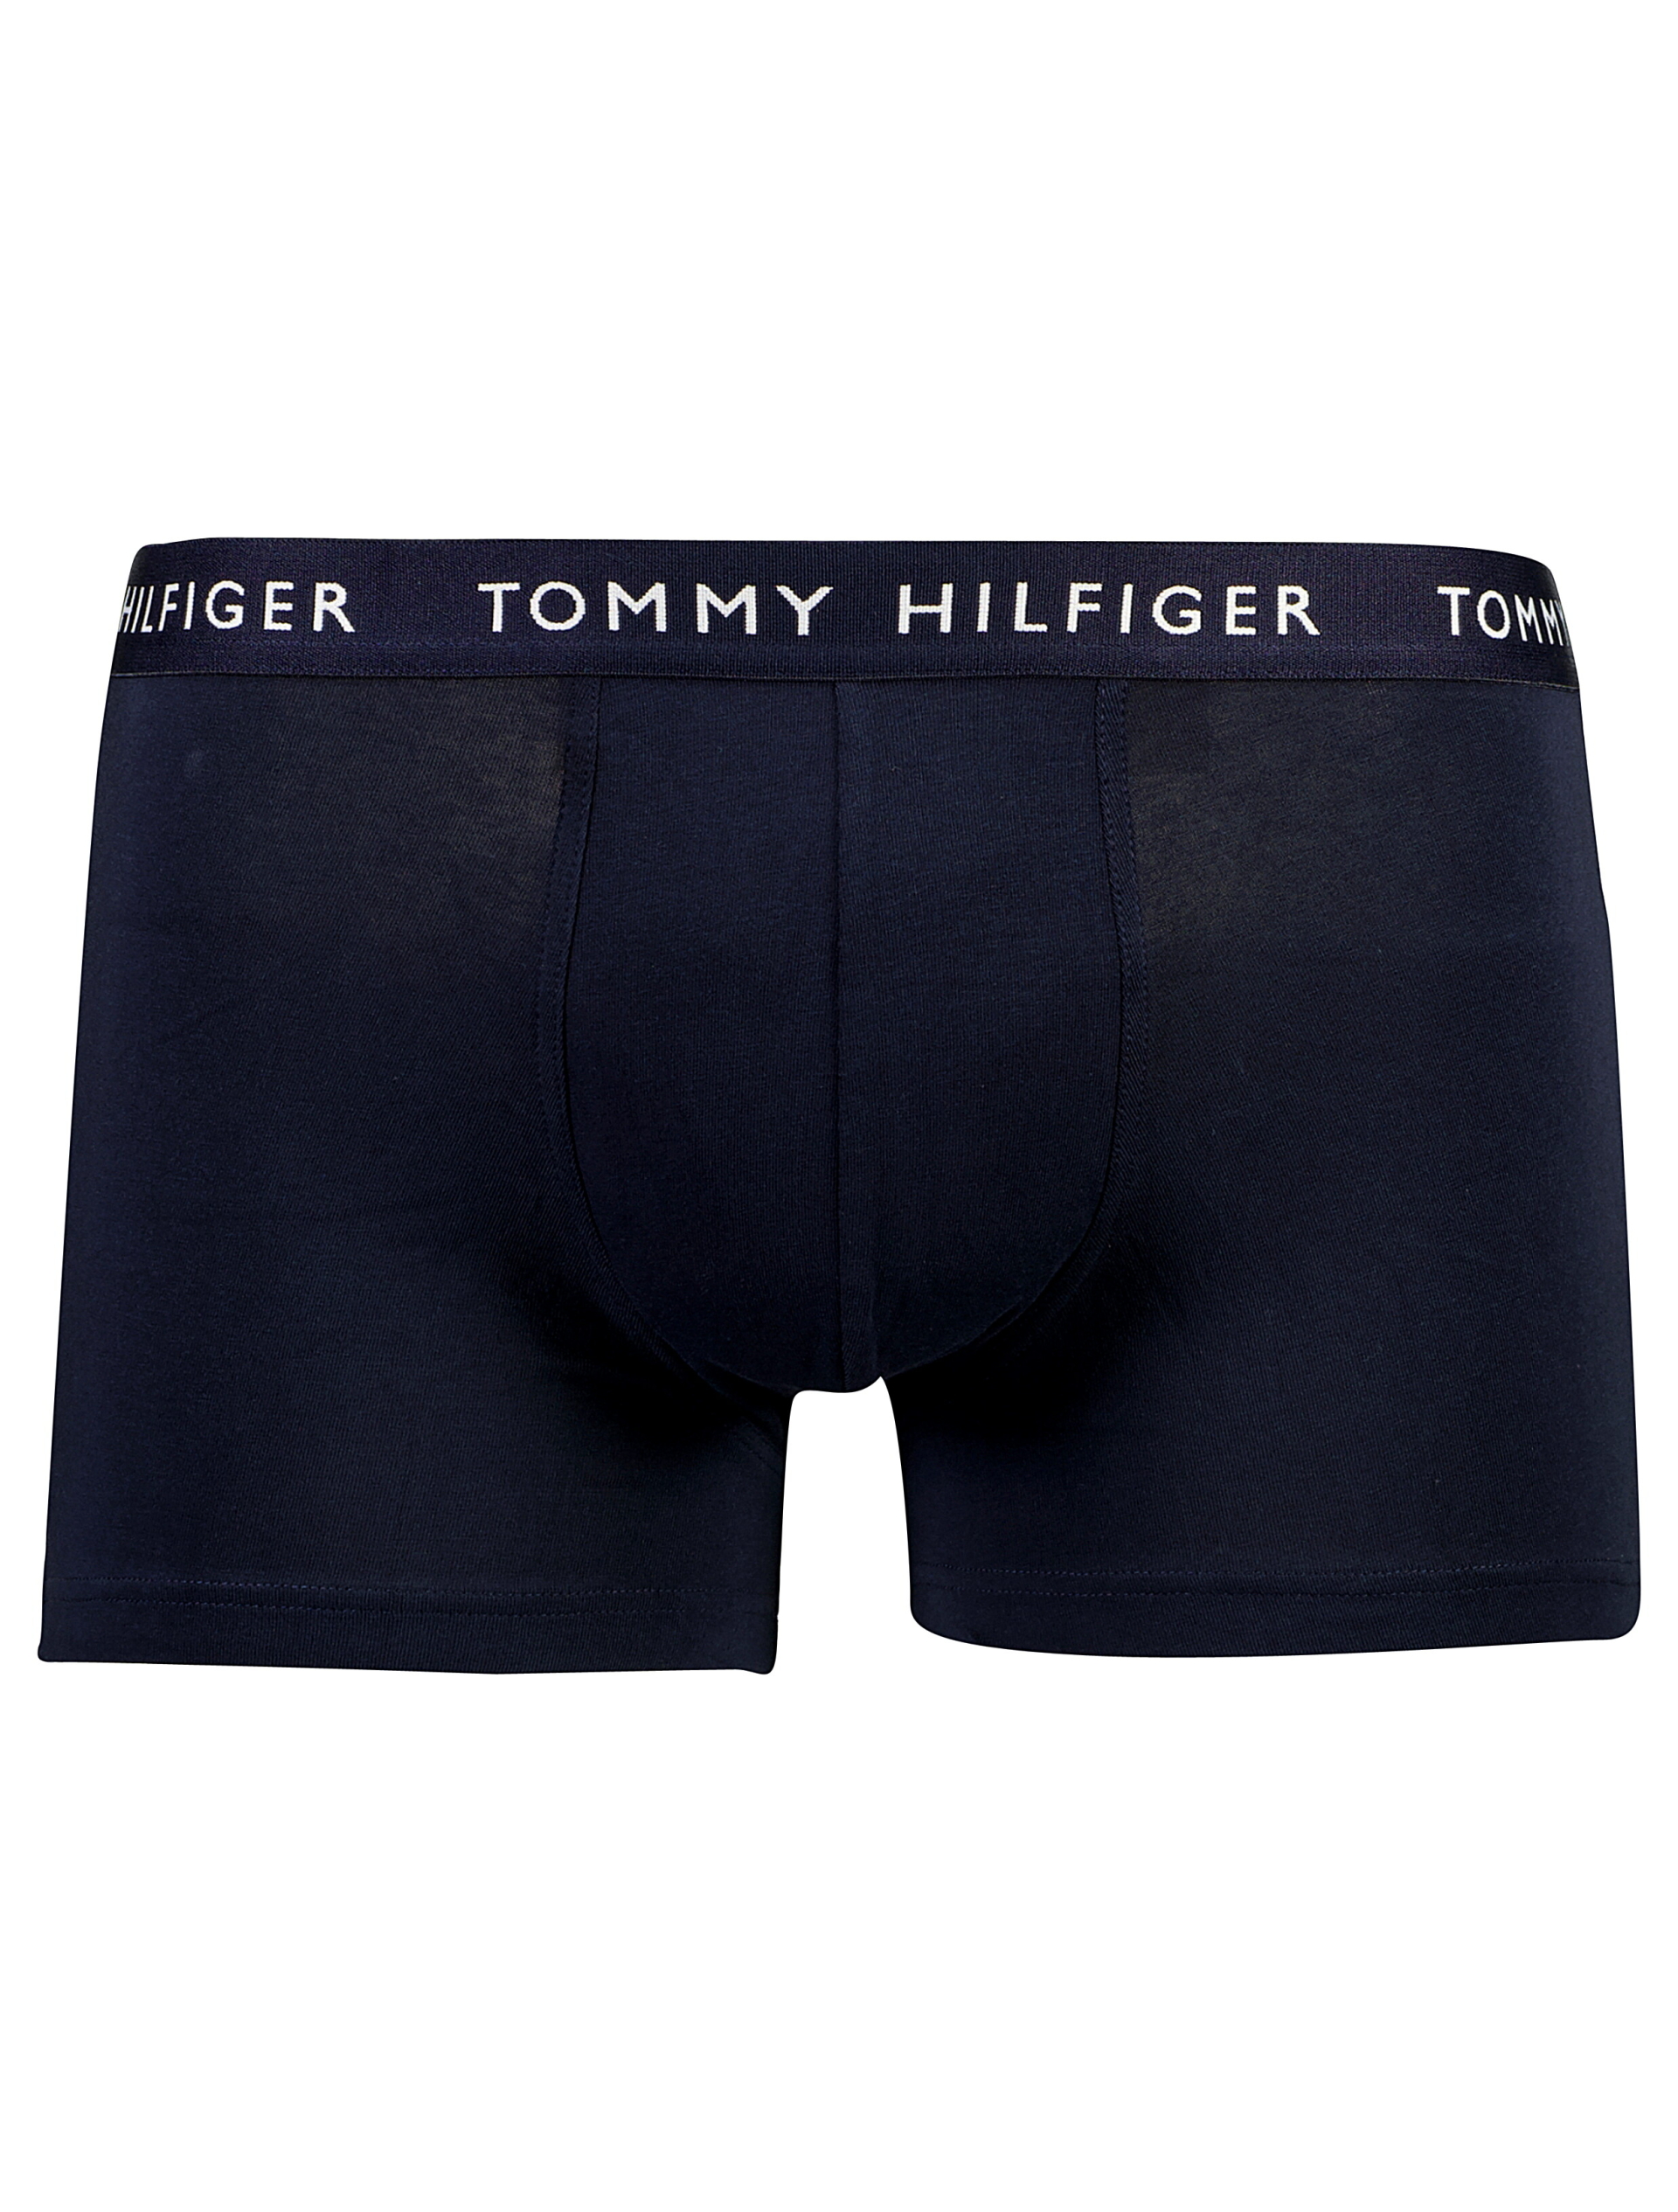 Tommy Hilfiger Tights blå / 0se